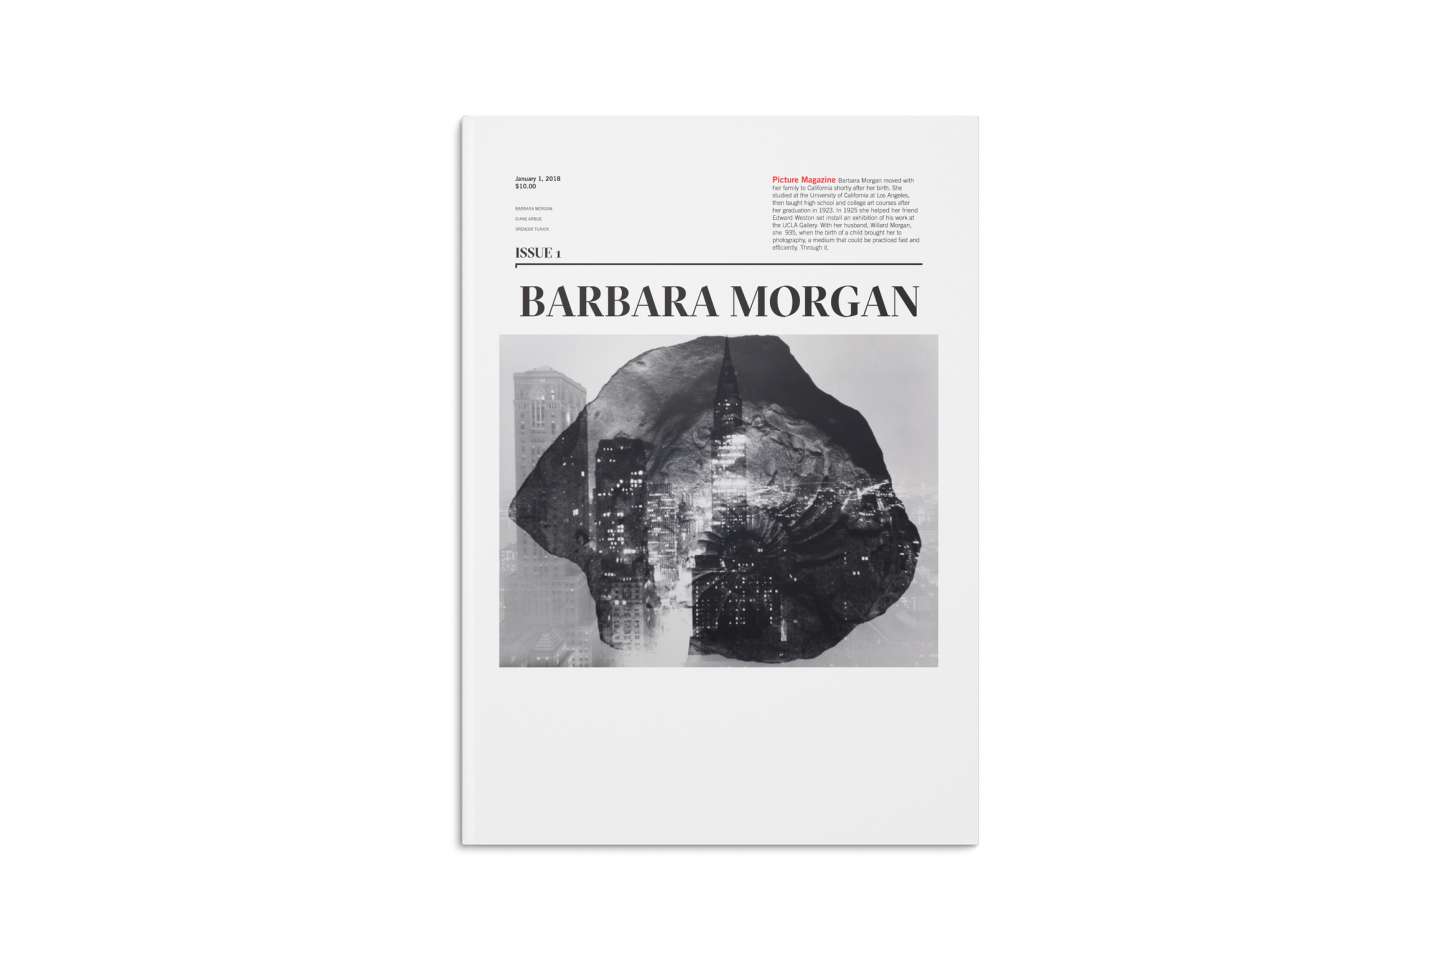 Picture Magazine (Barbara Morgan).